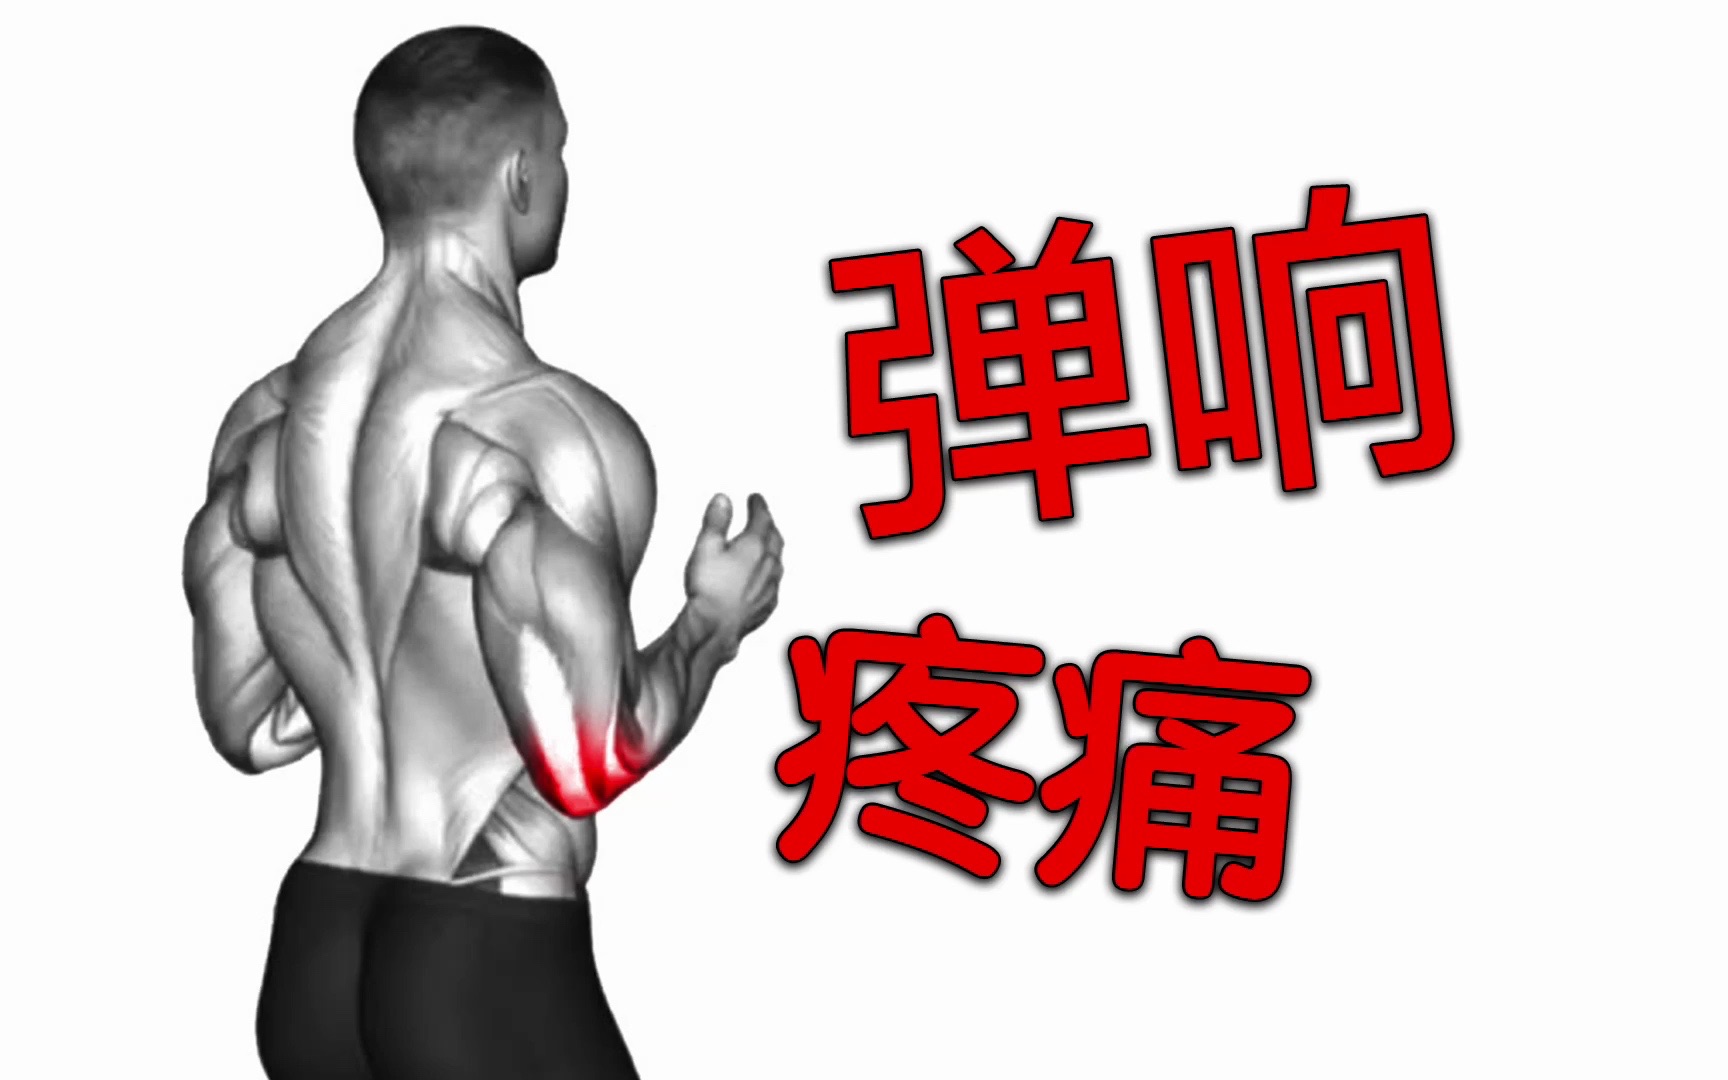 缓解手肘疼痛/弹响最根本的训练